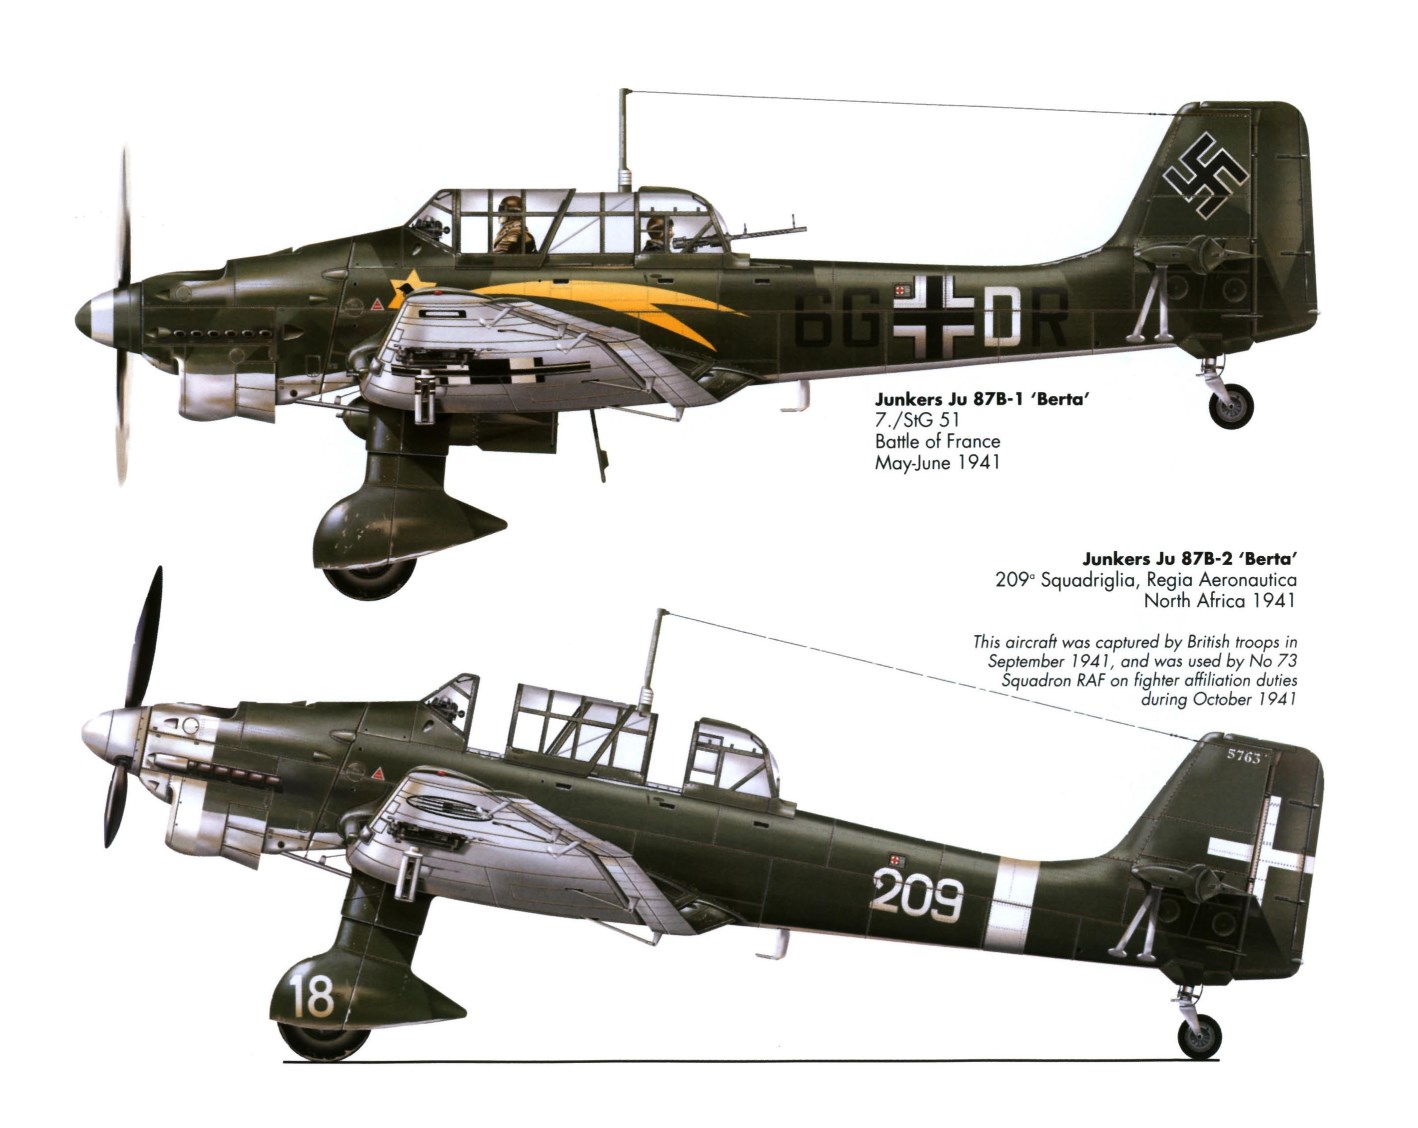 87 STUKA/Bf-110/Hs-129/Ju 88 BARRELS #48024 MASTER 3,7cm BORDKANONE FLAK 18 Ju 